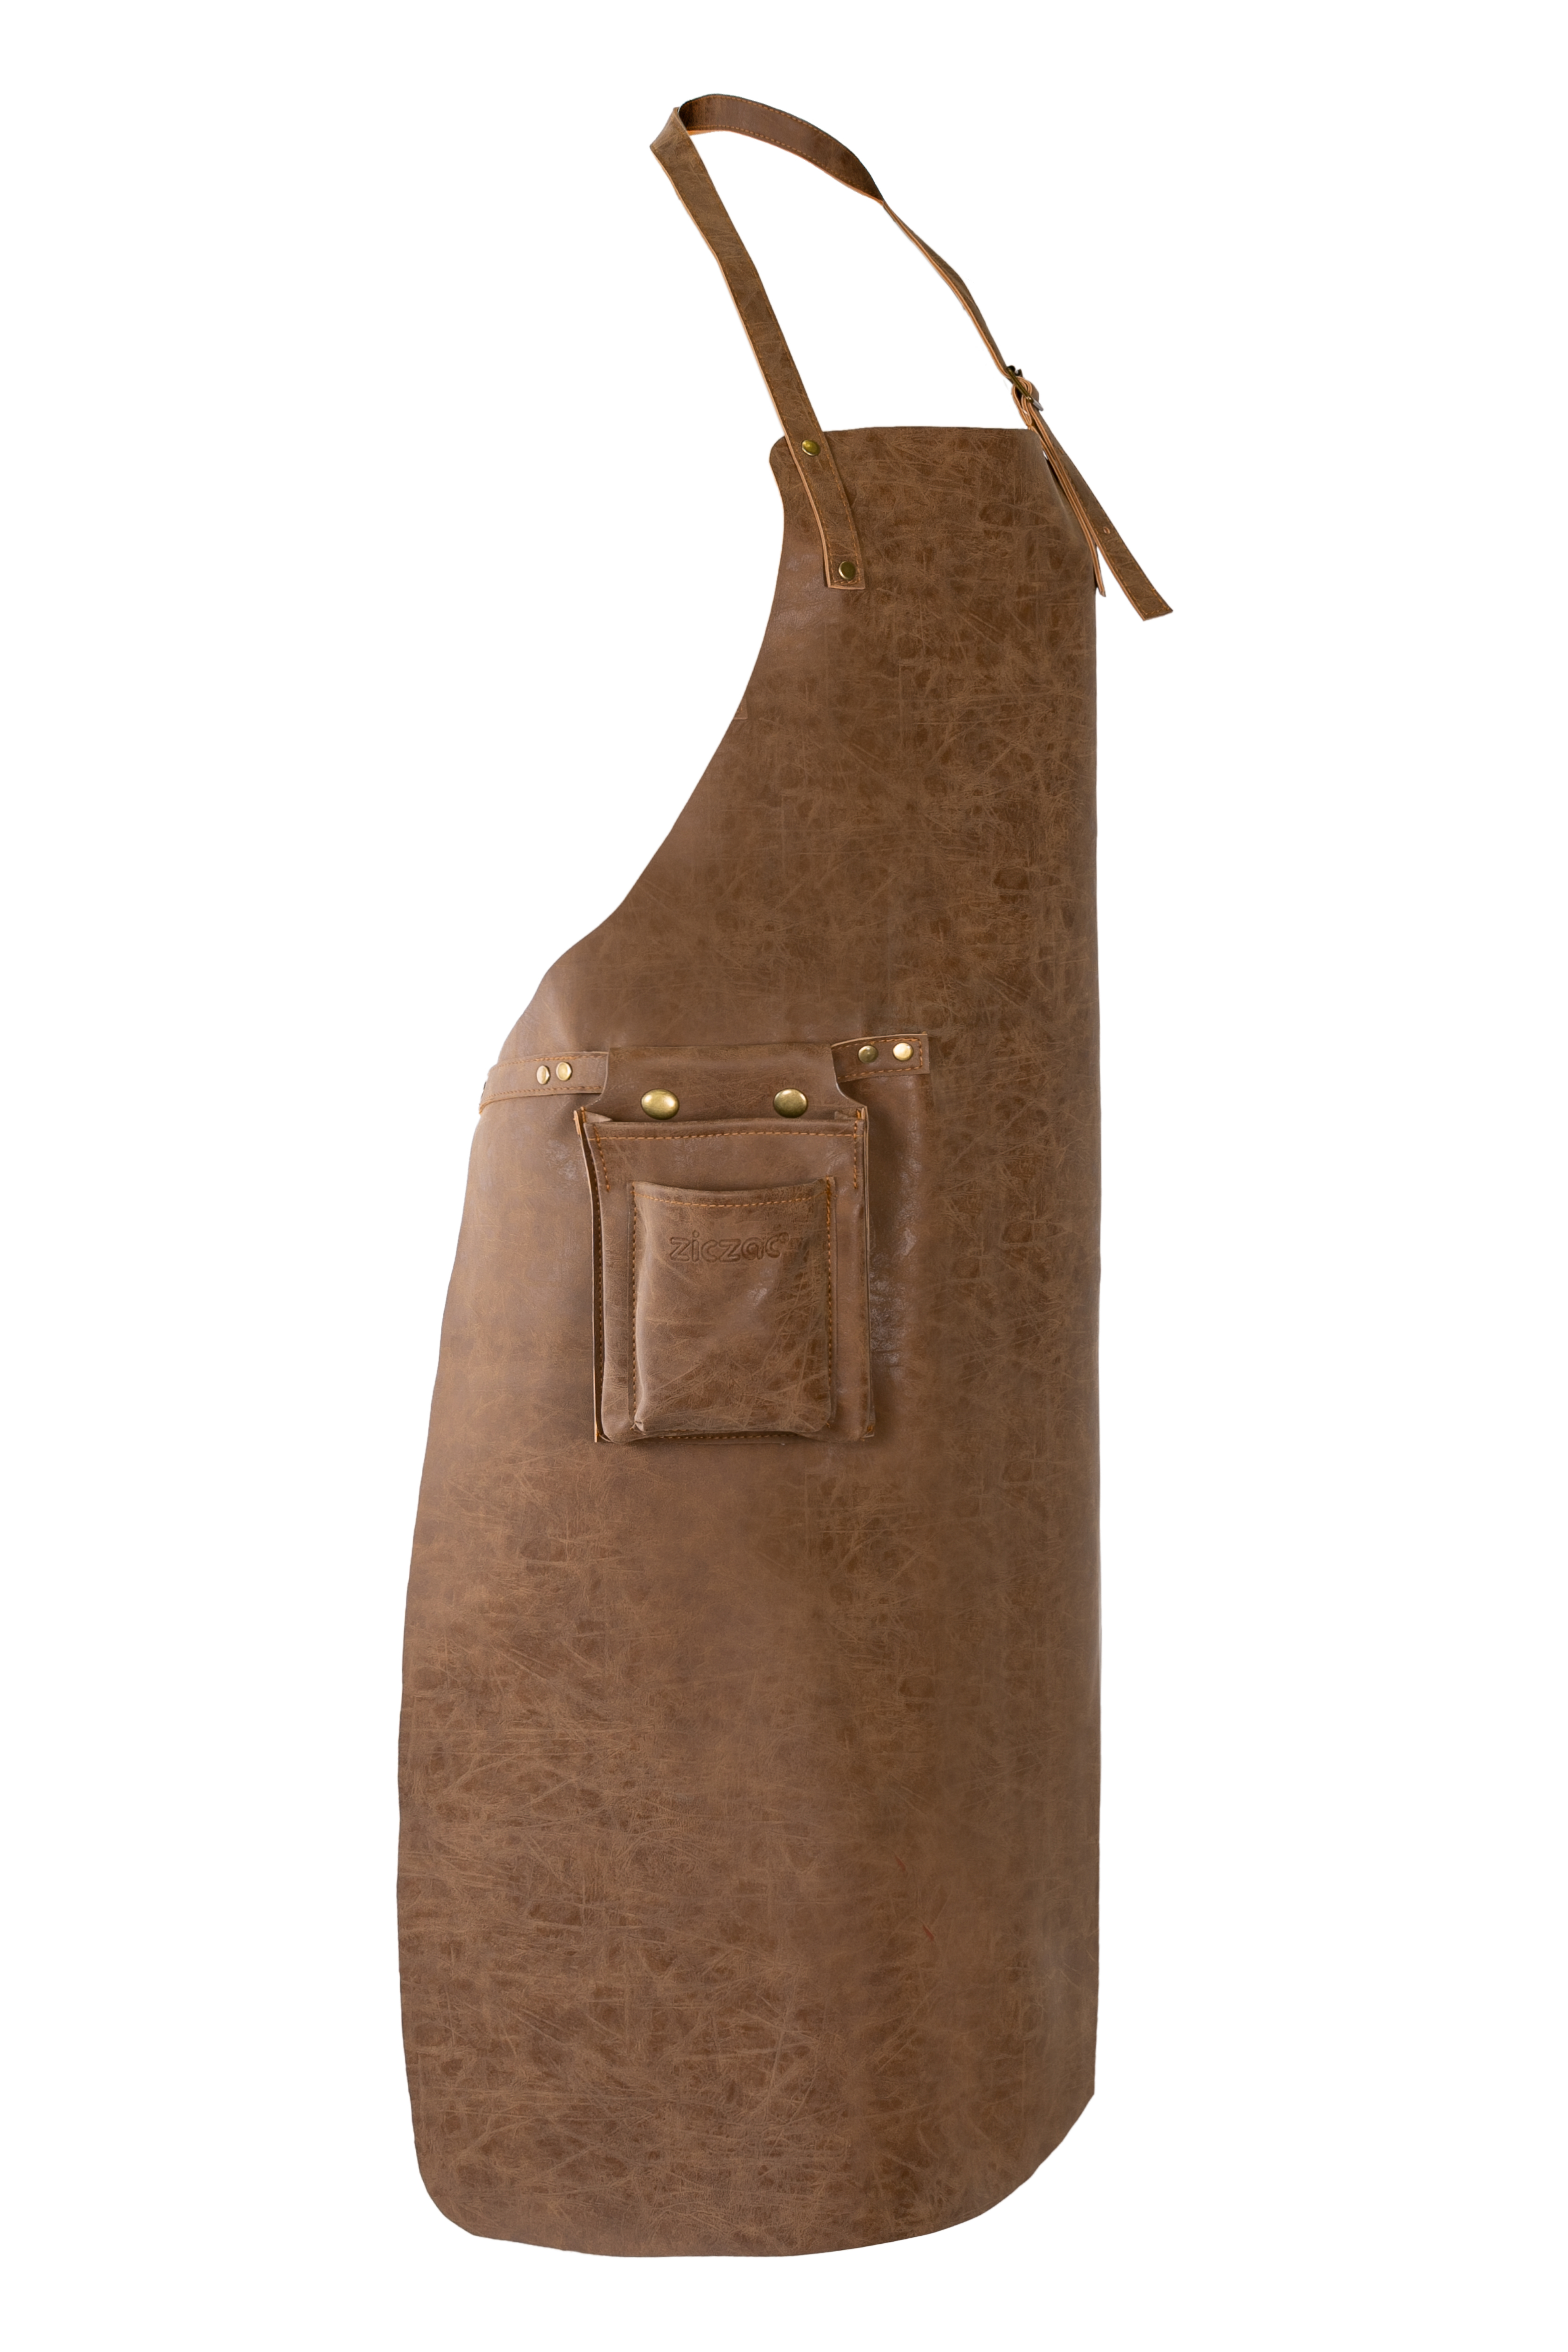 Apron TRUMAN (Towel loop - no pocket - opt. Accessory bag), 70x90 cm, walnut